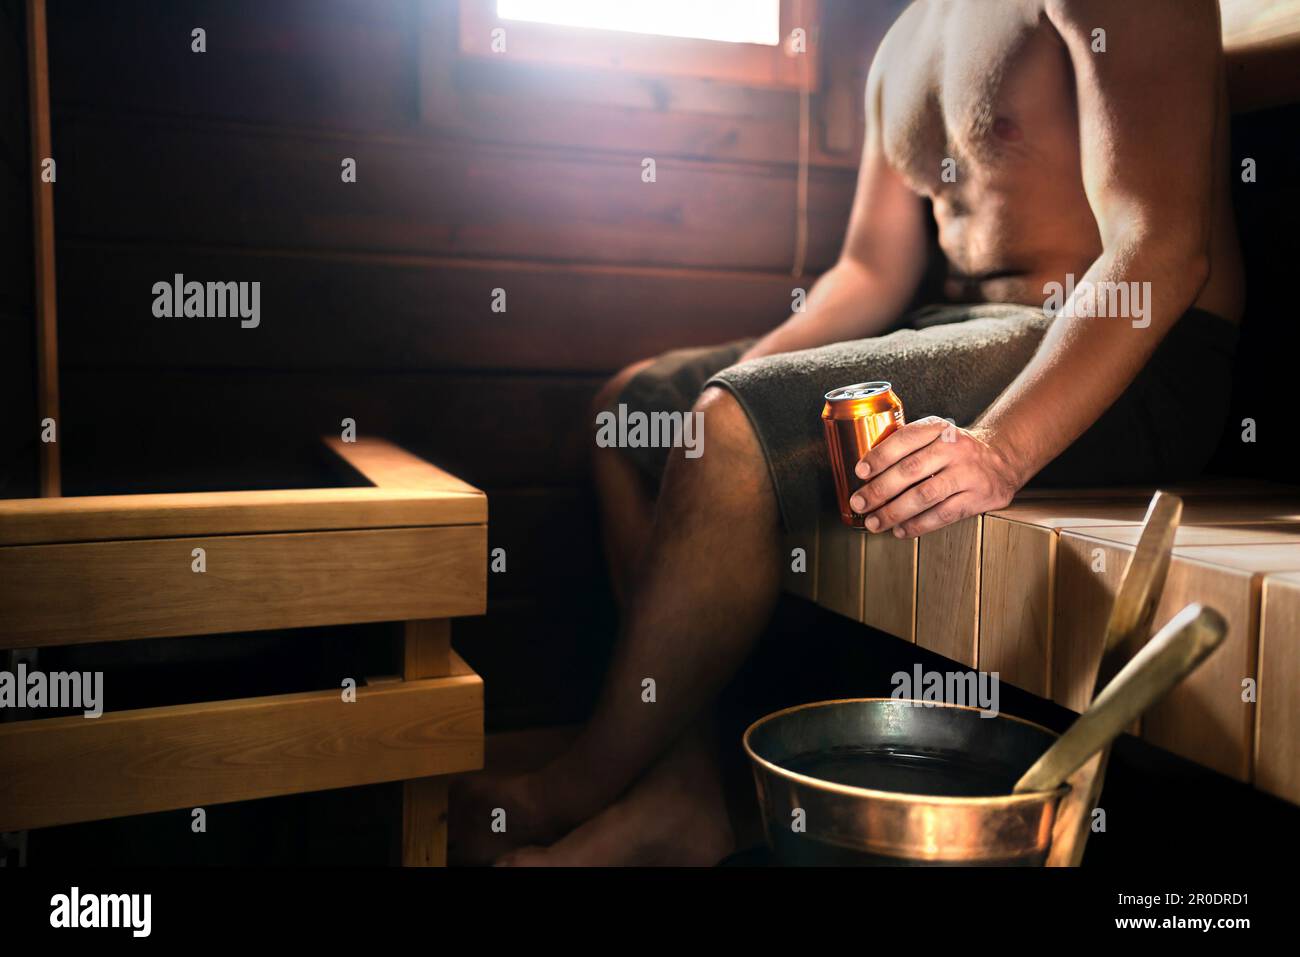 Sauna und Bier. Mann im Dampfbad entspannt und trinkt etwas. Traditionelles finnisches Wellnesszentrum aus dunklem Holz oder im Wellness-Hotel in Finnland. Stockfoto